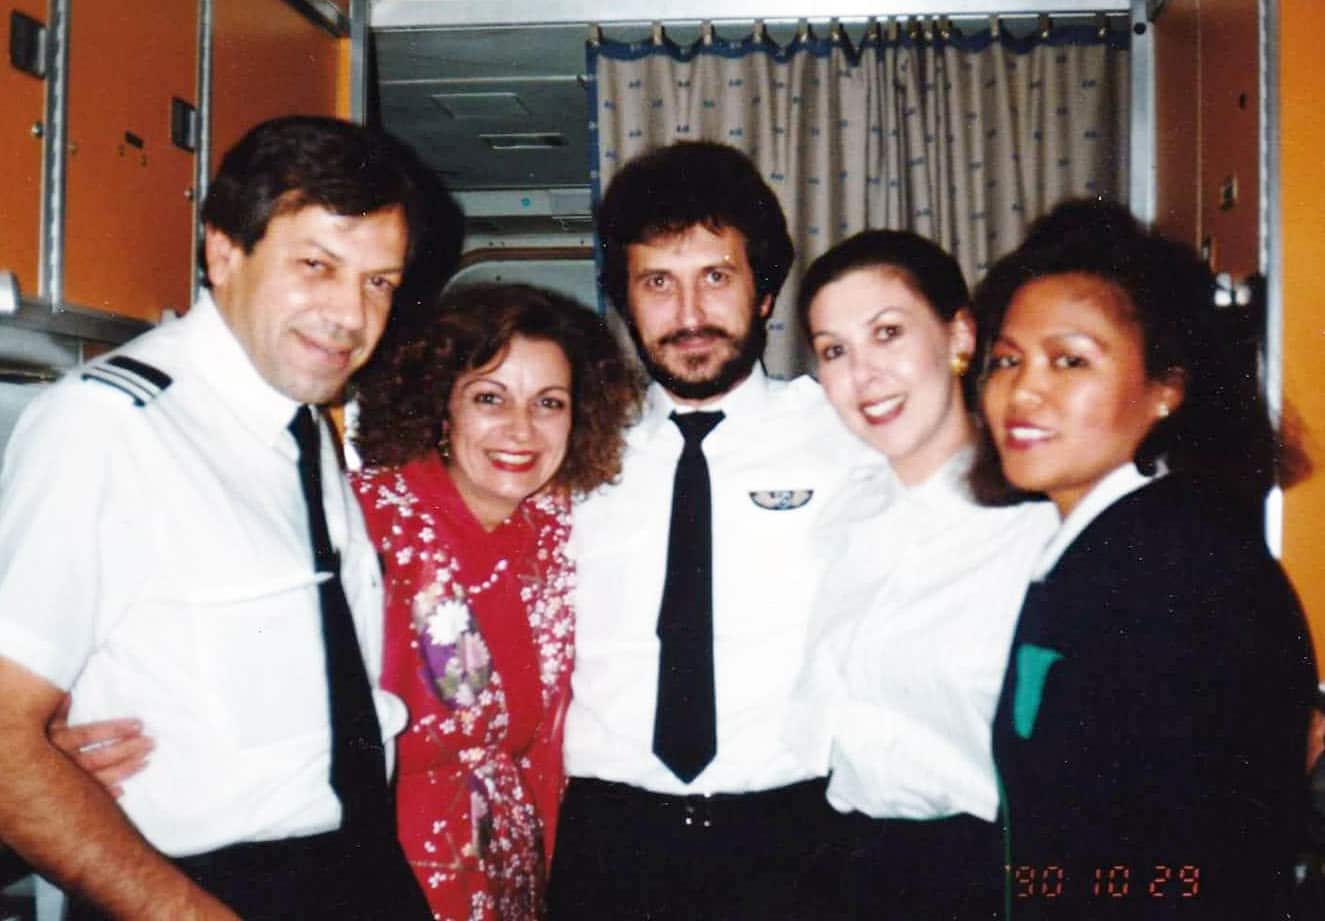 Olga as a Flight Attendant